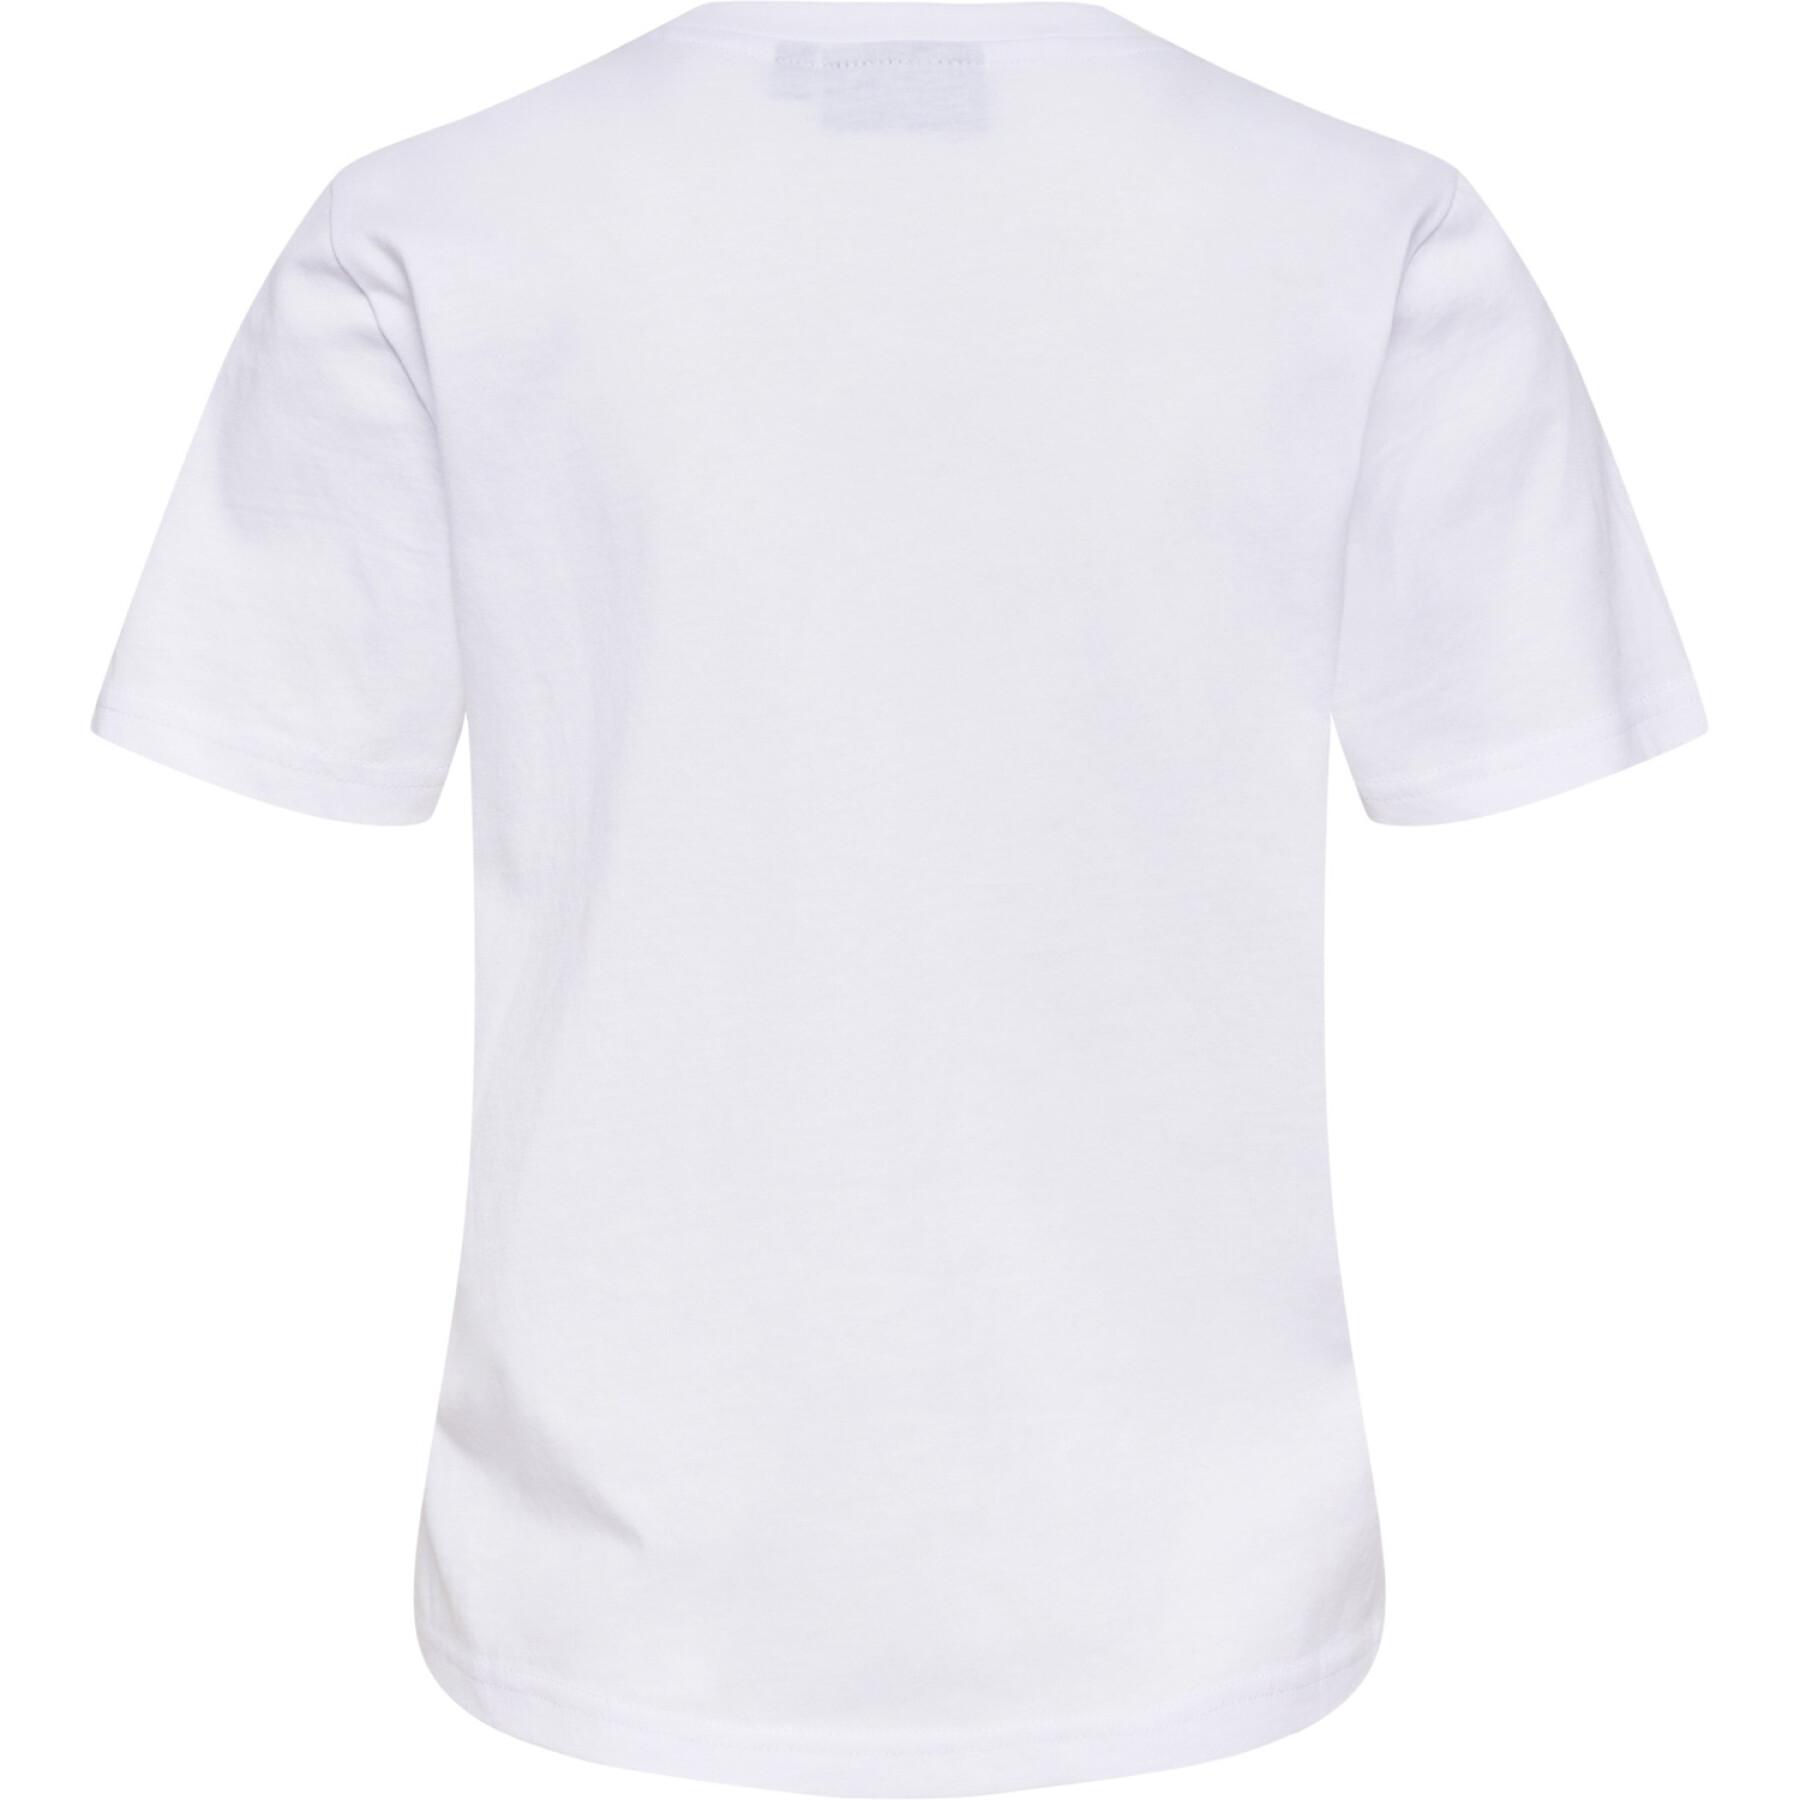 Women's T-shirt Hummel Icons - Sportswear - T-Shirts - Women